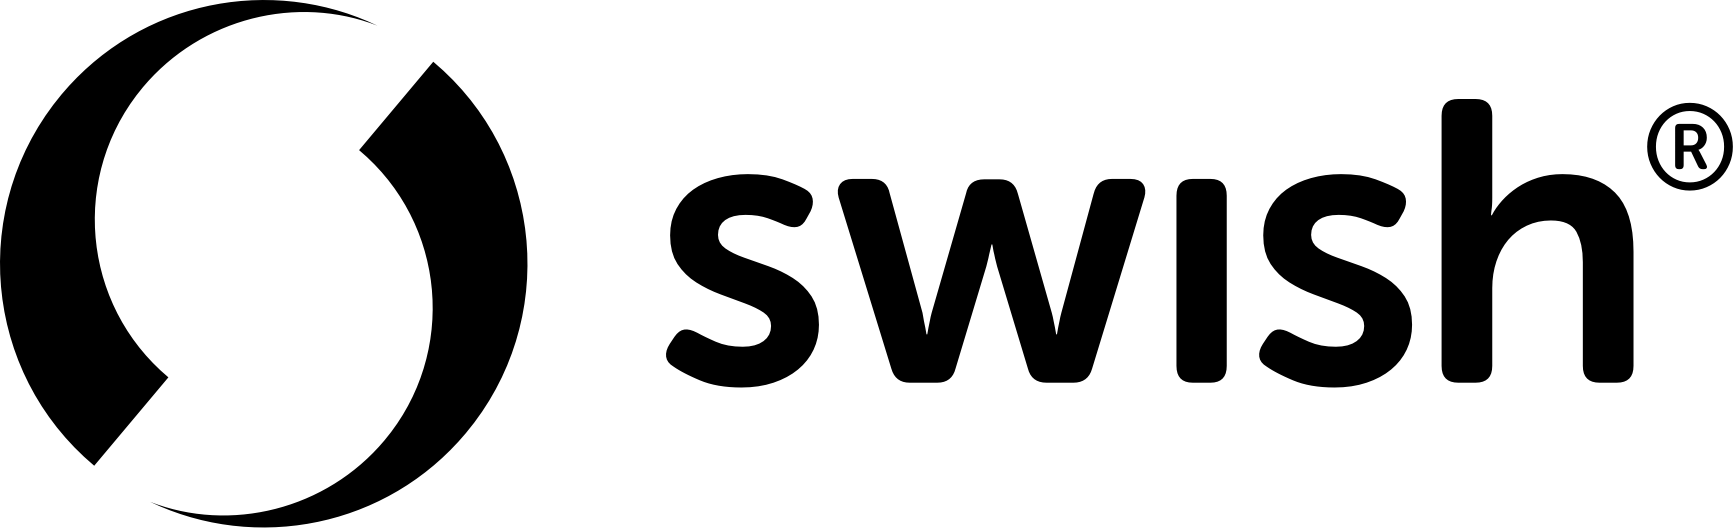 Swish logo black